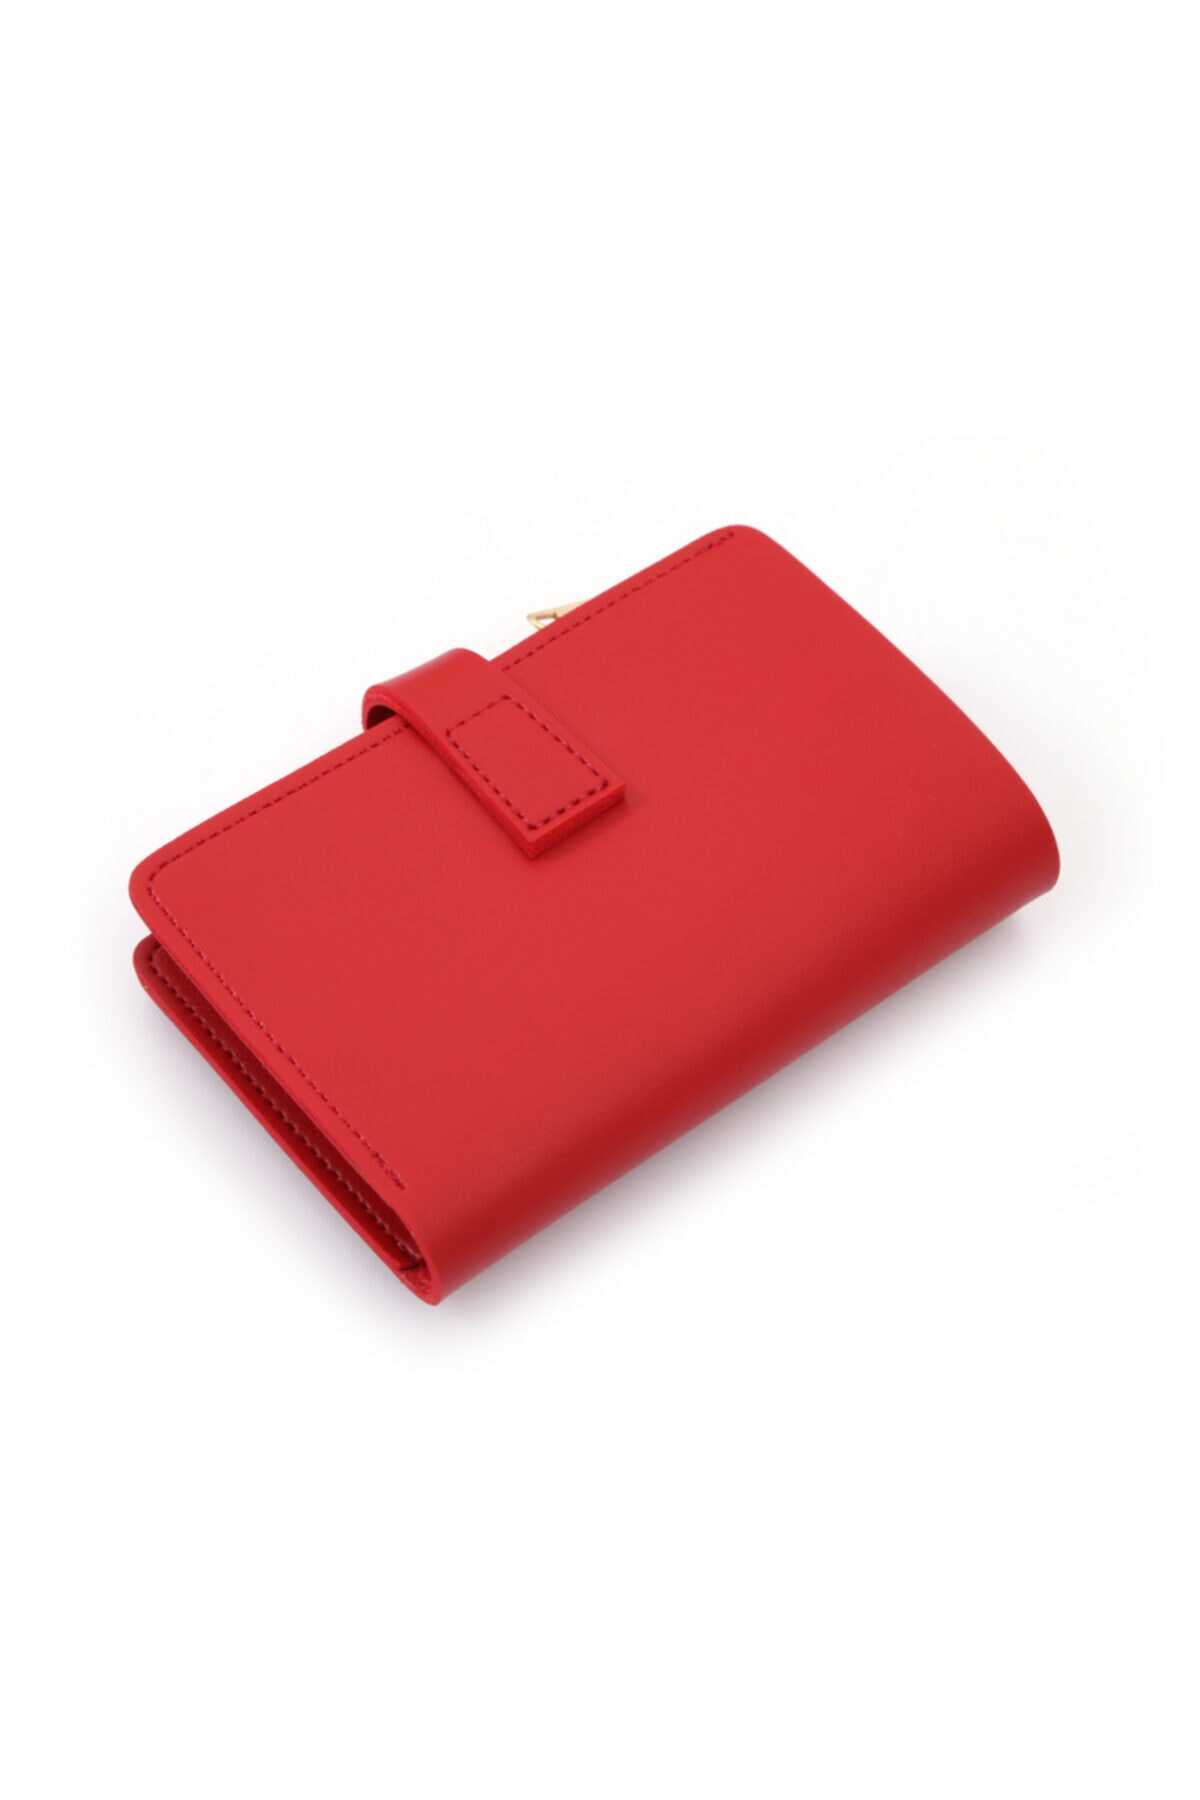  کیف پول زنانه چرم قرمز برند ByOzgunTasarım